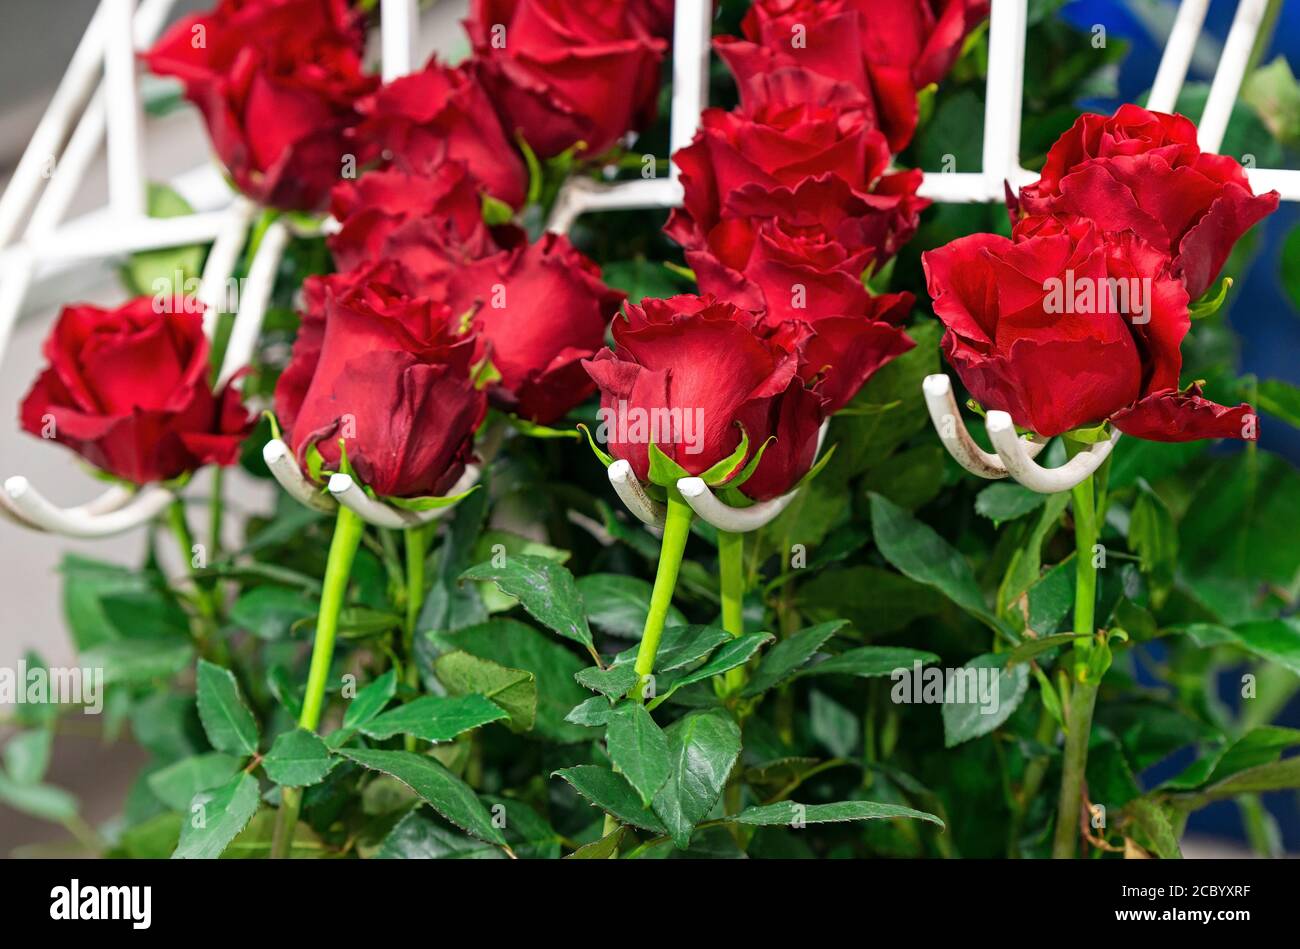 Roses rouges, la fleur nationale équatorienne, dans la chaîne de production pour la classification des tailles, Cayambe, au nord de Quito, Équateur. Banque D'Images